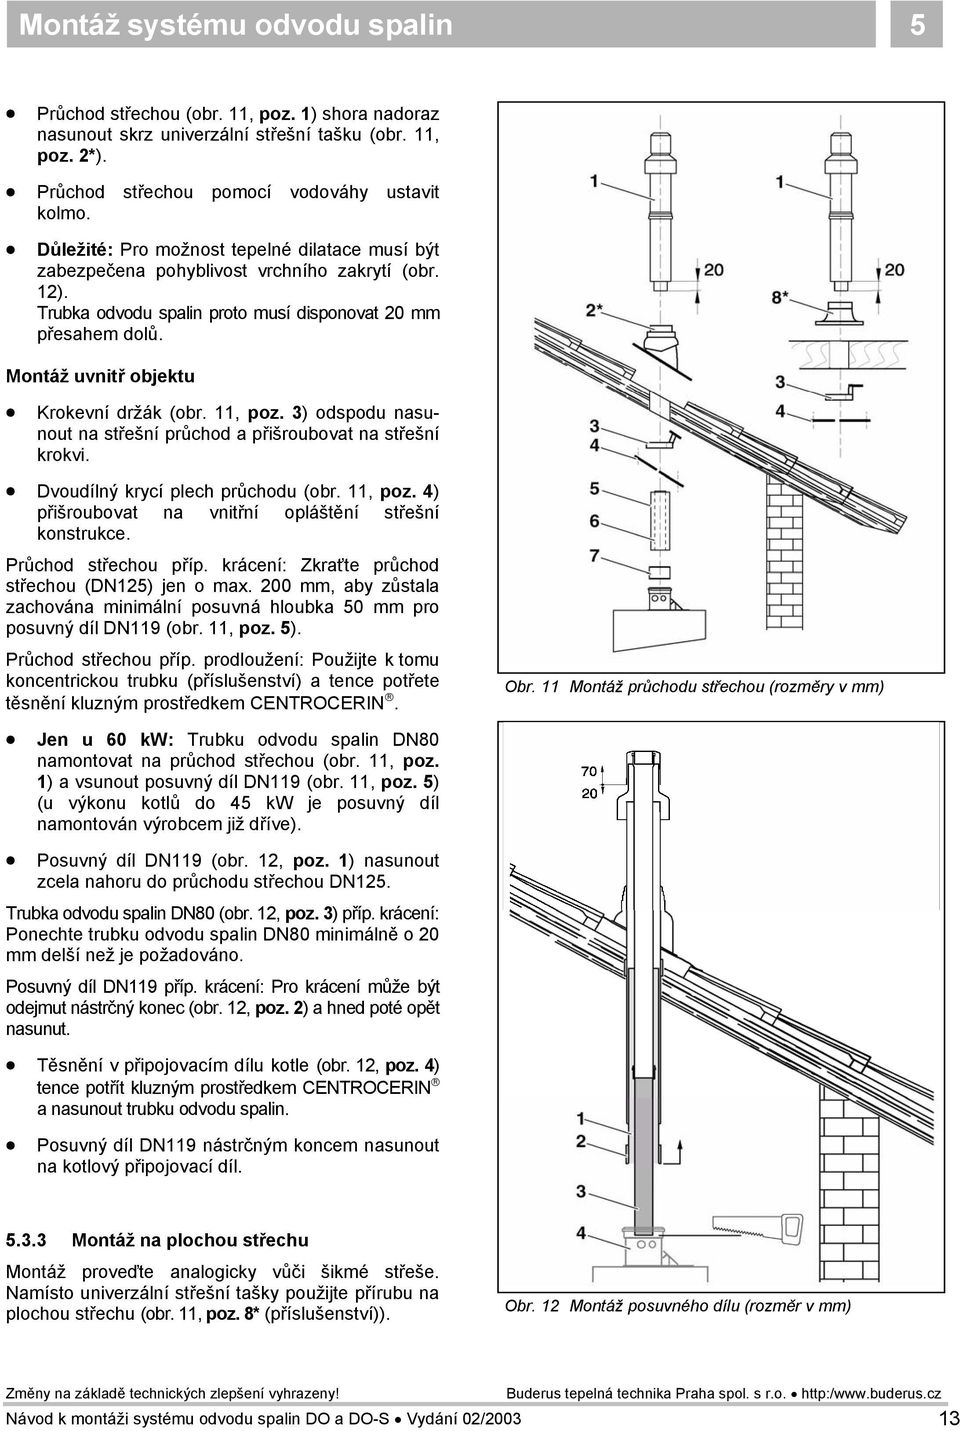 Montáž uvnitř objektu Krokevní držák (obr. 11, poz. 3) odspodu nasunout na střešní průchod a přišroubovat na střešní krokvi. Dvoudílný krycí plech průchodu (obr. 11, poz. 4) přišroubovat na vnitřní opláštění střešní konstrukce.